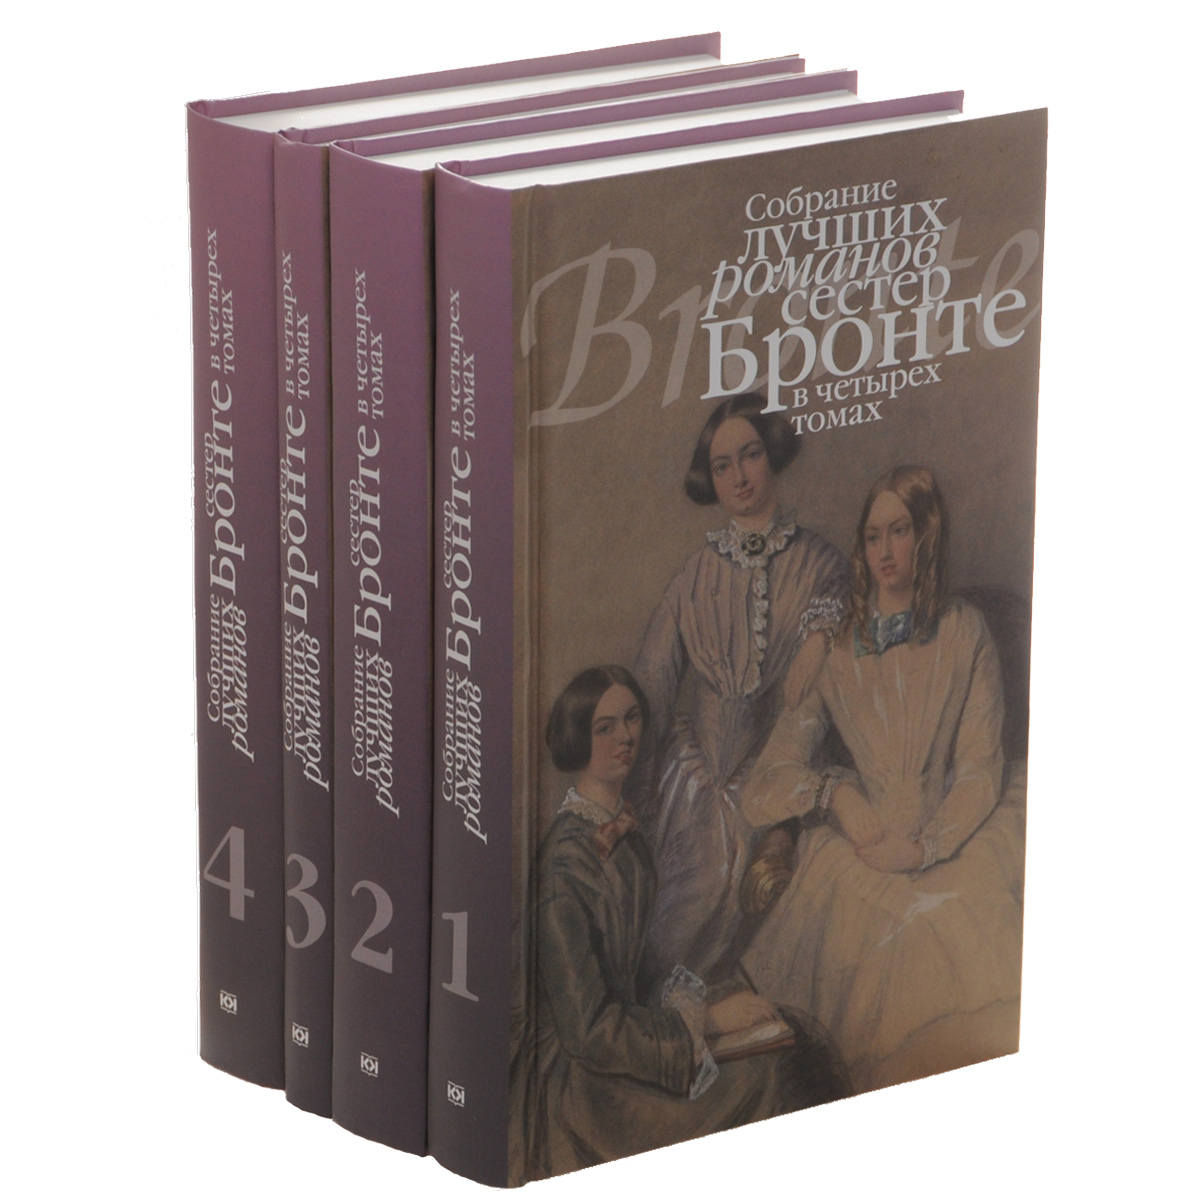 Собрание лучших романов сестер Бронте. В 4 томах (комплект). Шарлотта Бронте, Эмили Бронте, Энн Бронте